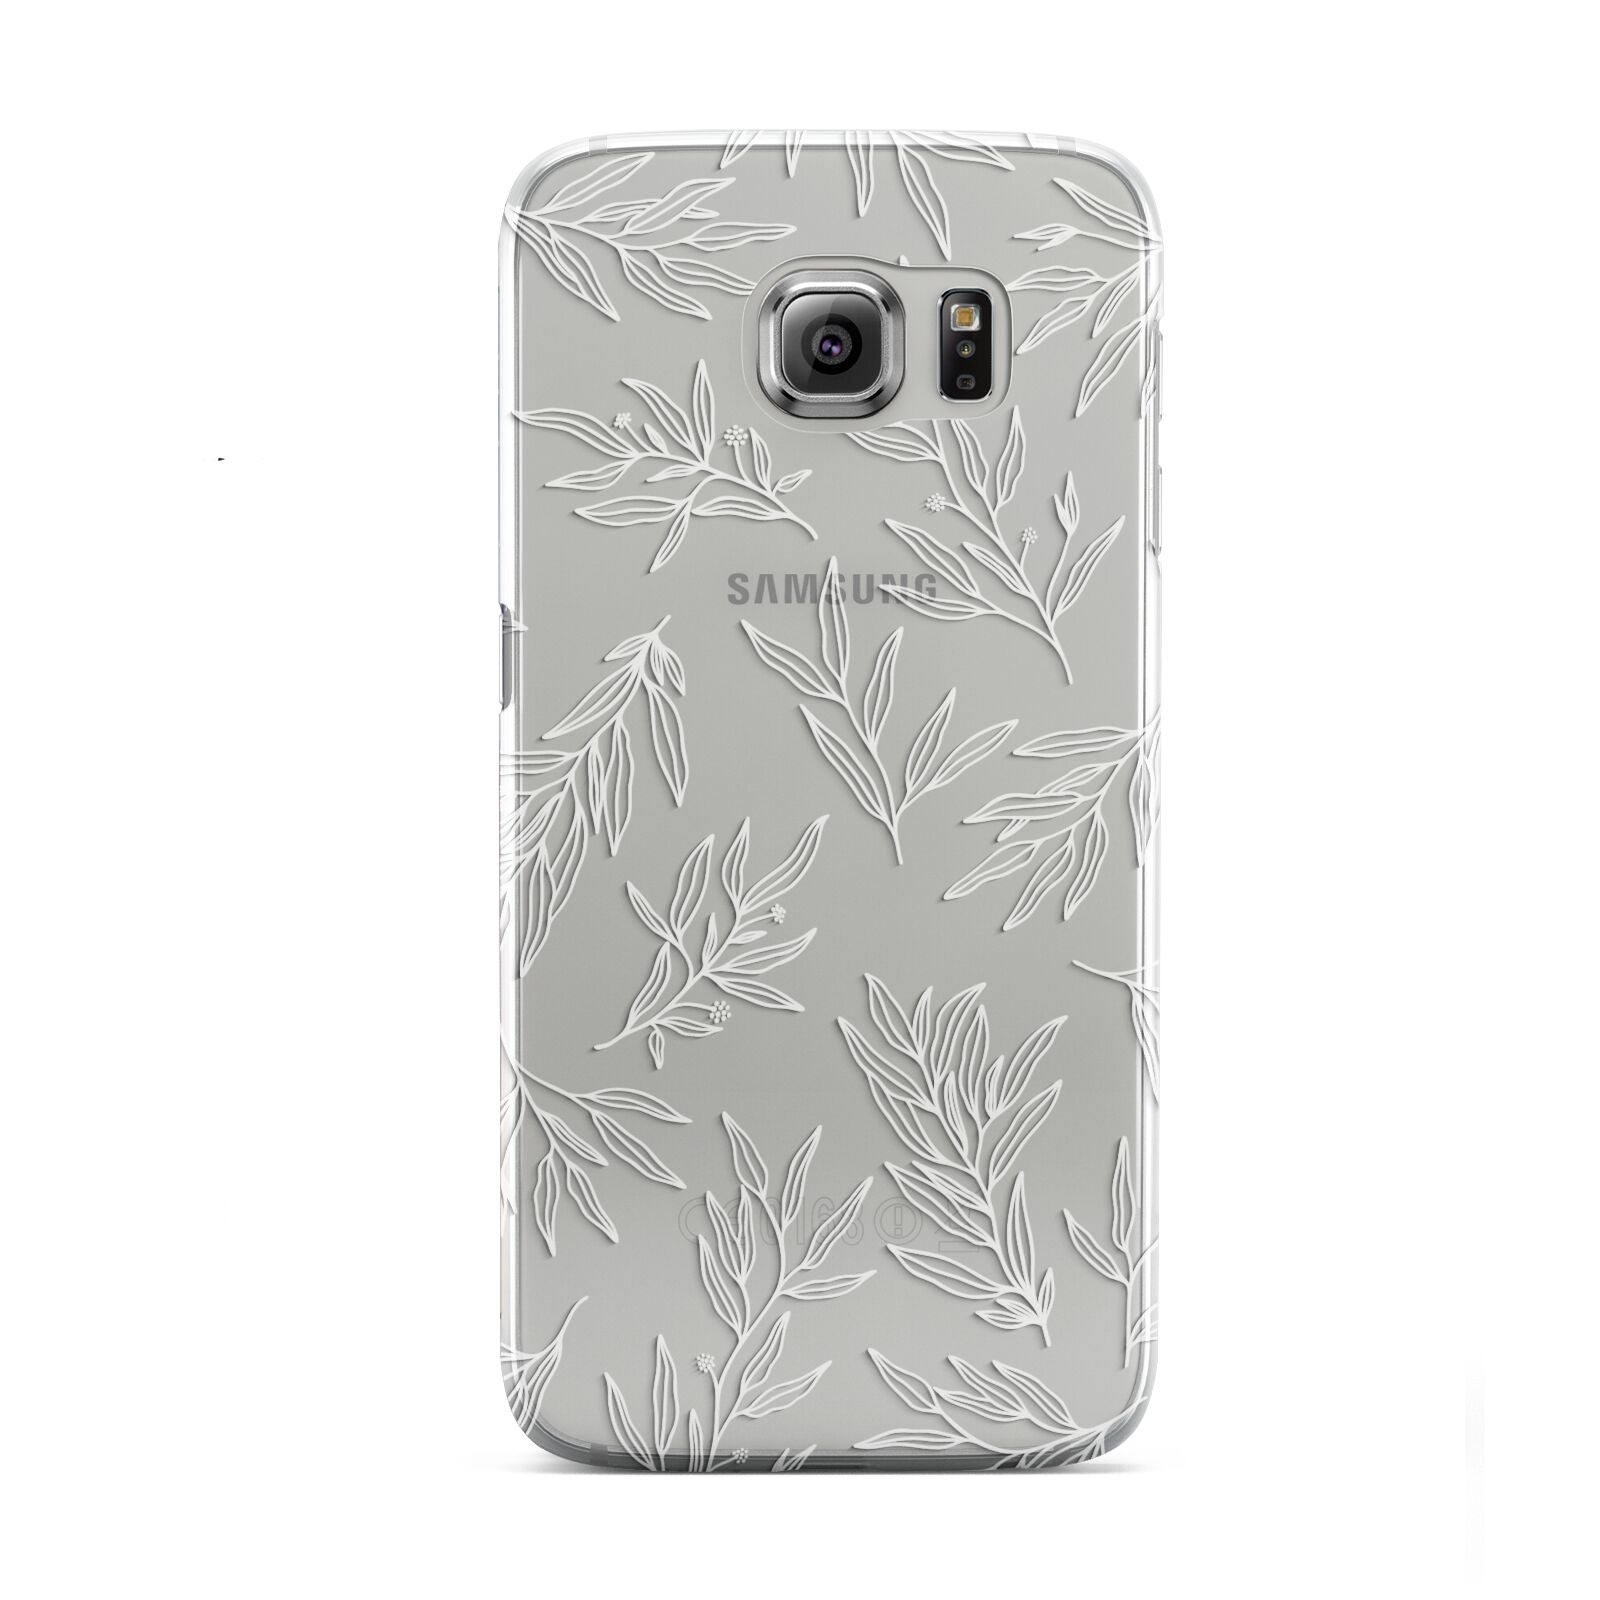 Botanical Leaf Samsung Galaxy S6 Case